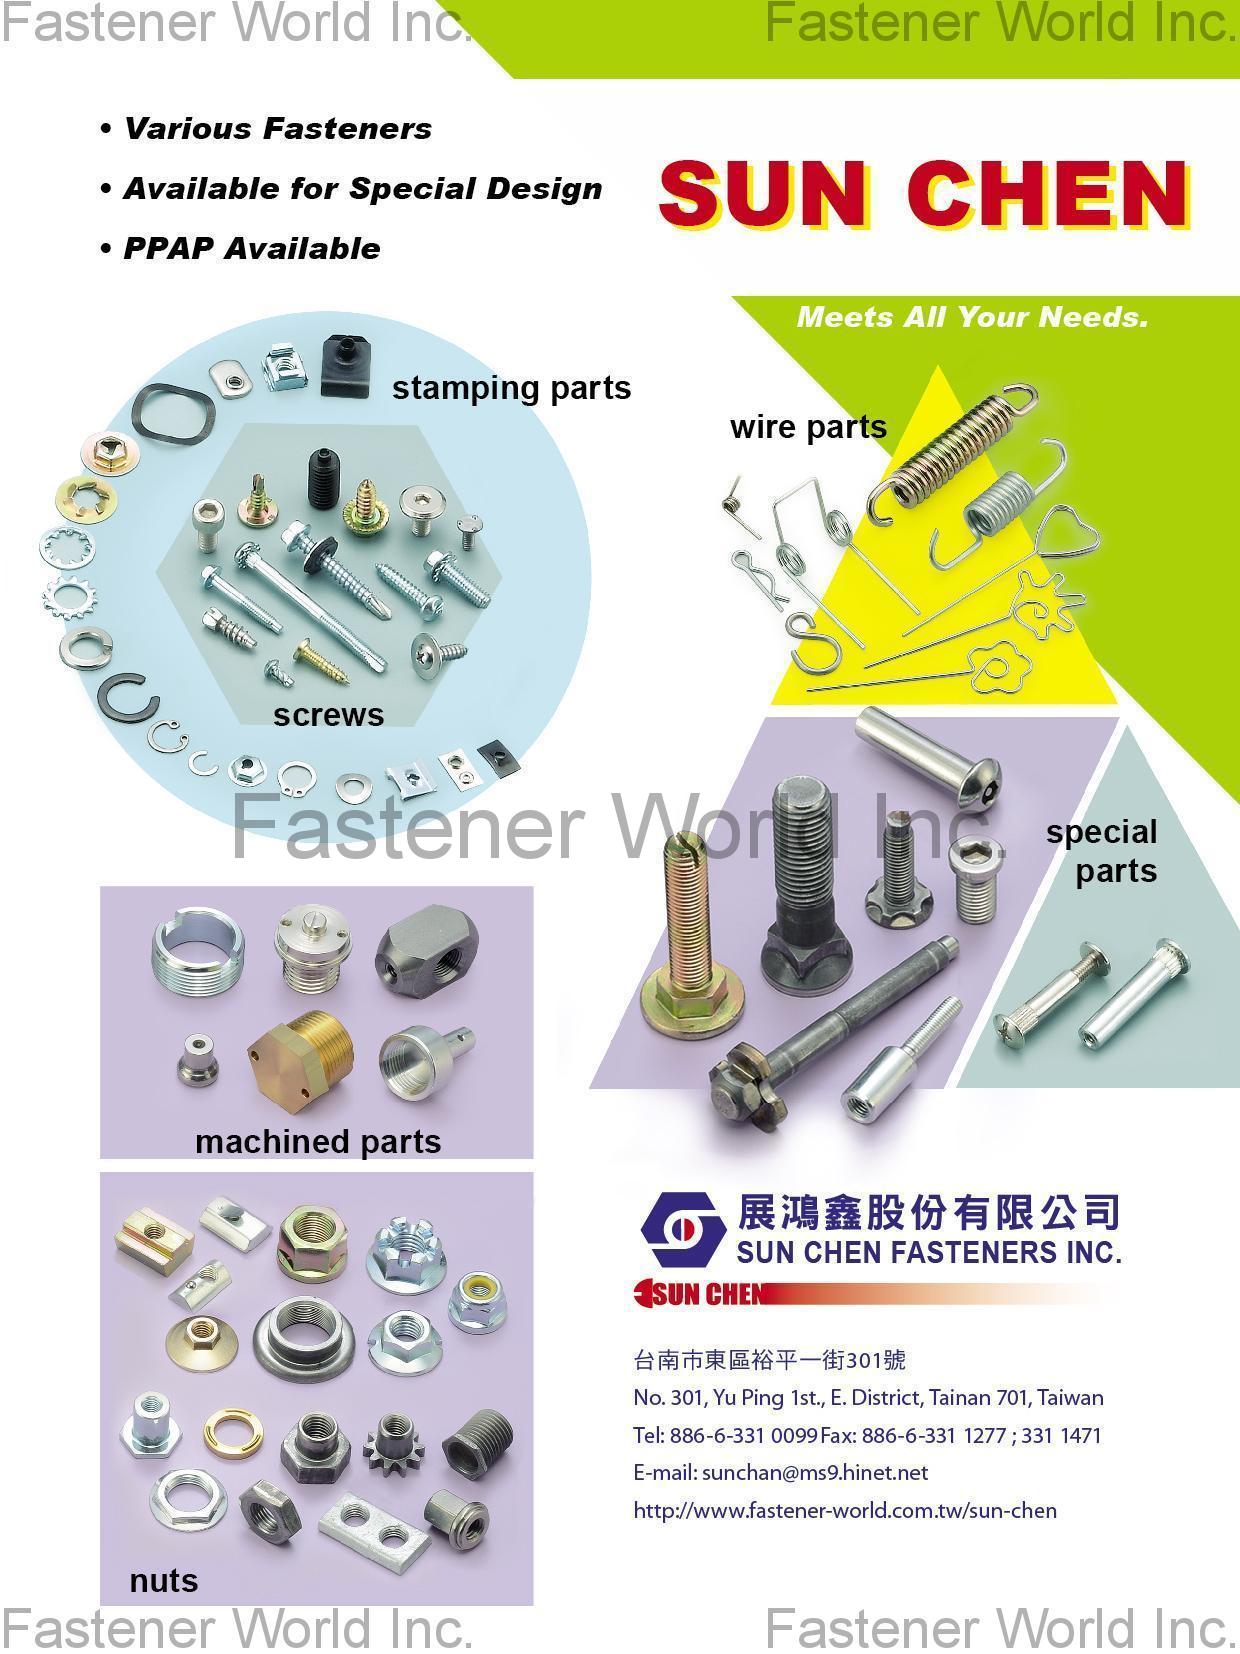 展鴻鑫股份有限公司  , screw, bolts, nuts, wire parts, stamping , 機械零件